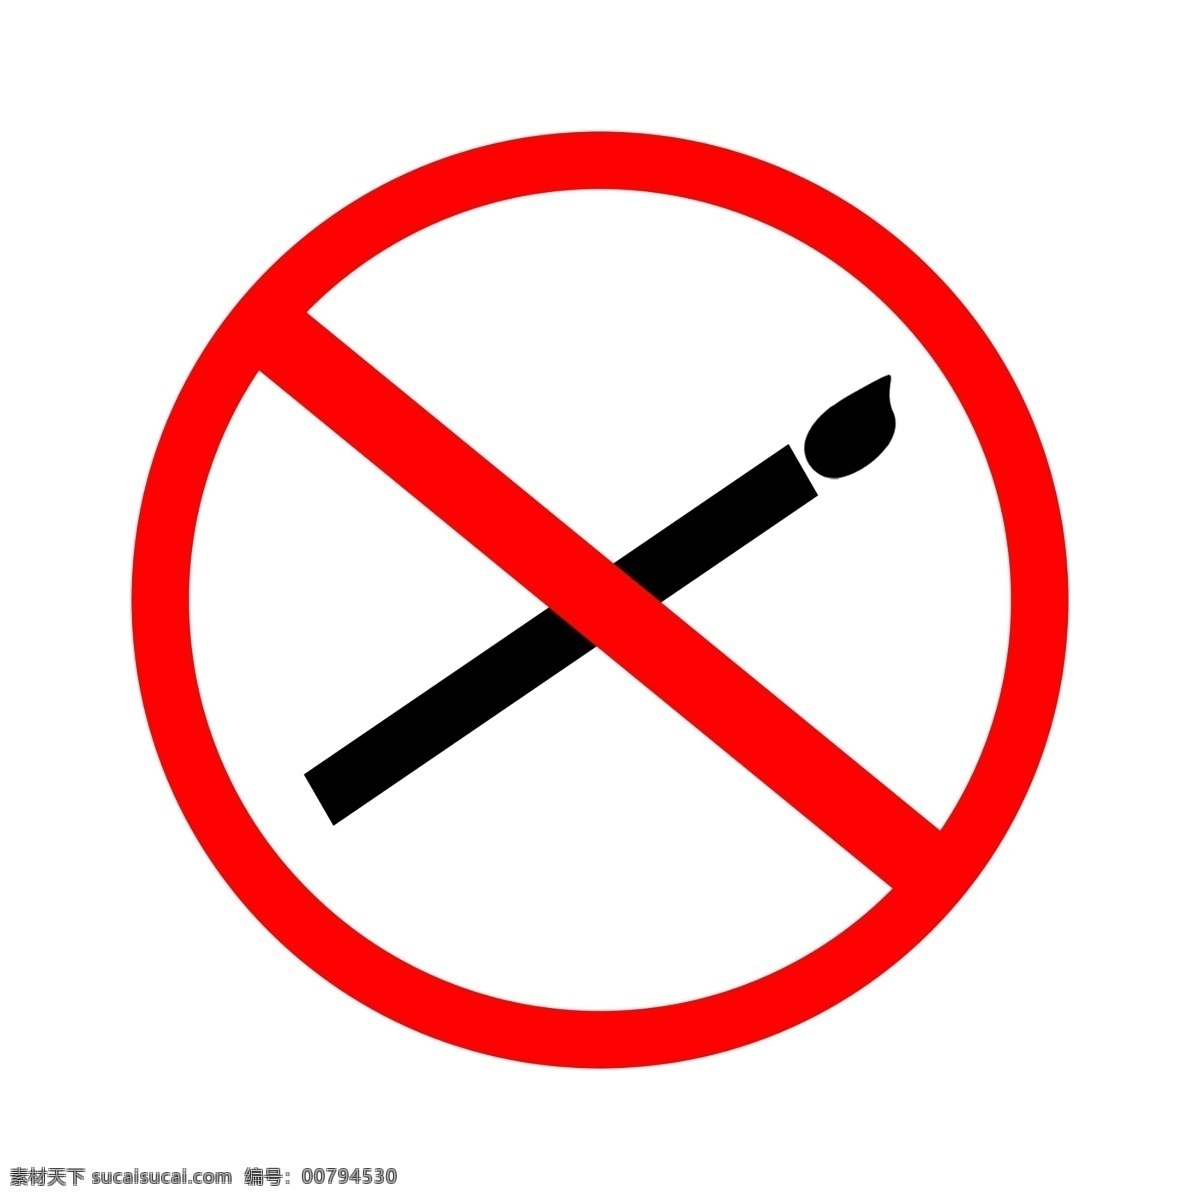 禁止 烟火 禁止烟火 标志 标示 标志牌 常用标示 公共标志 标志图标 红色标识 红色图标 烟火图标